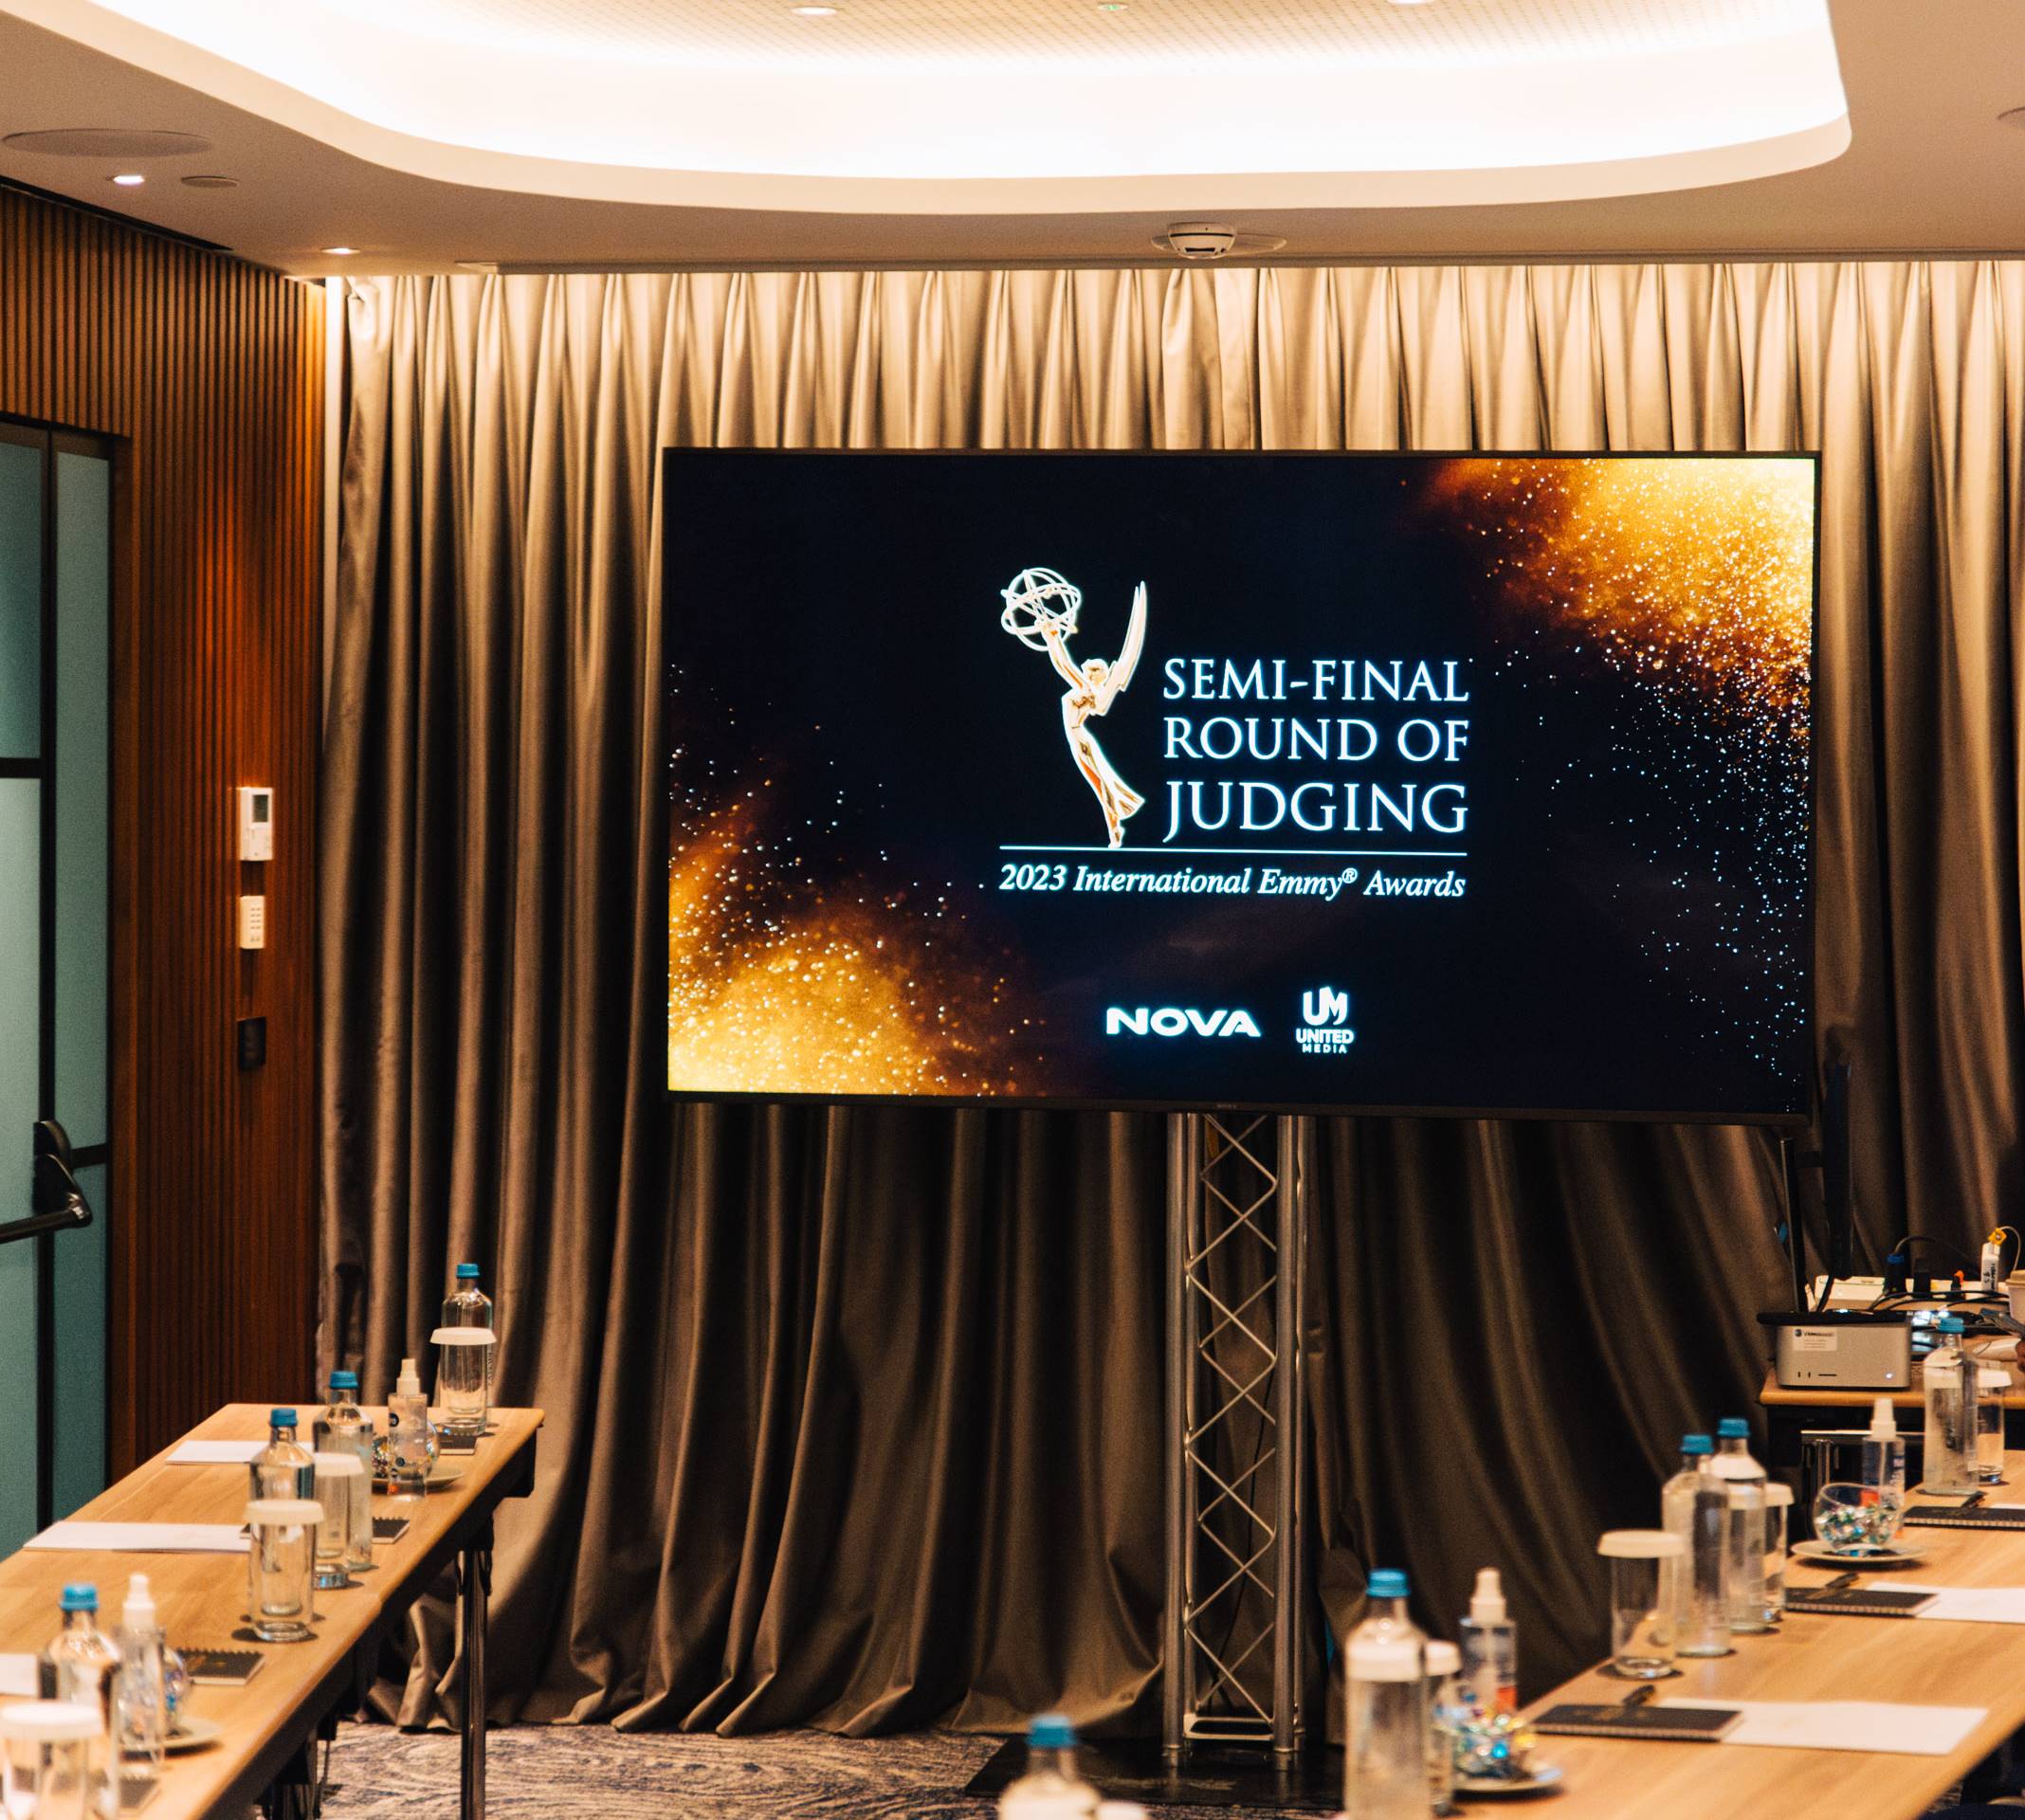 United Media domaćin internacionalnog Emmy® polufinalnog žiriranja u partnerstvu sa Nova i gradom Atina 2